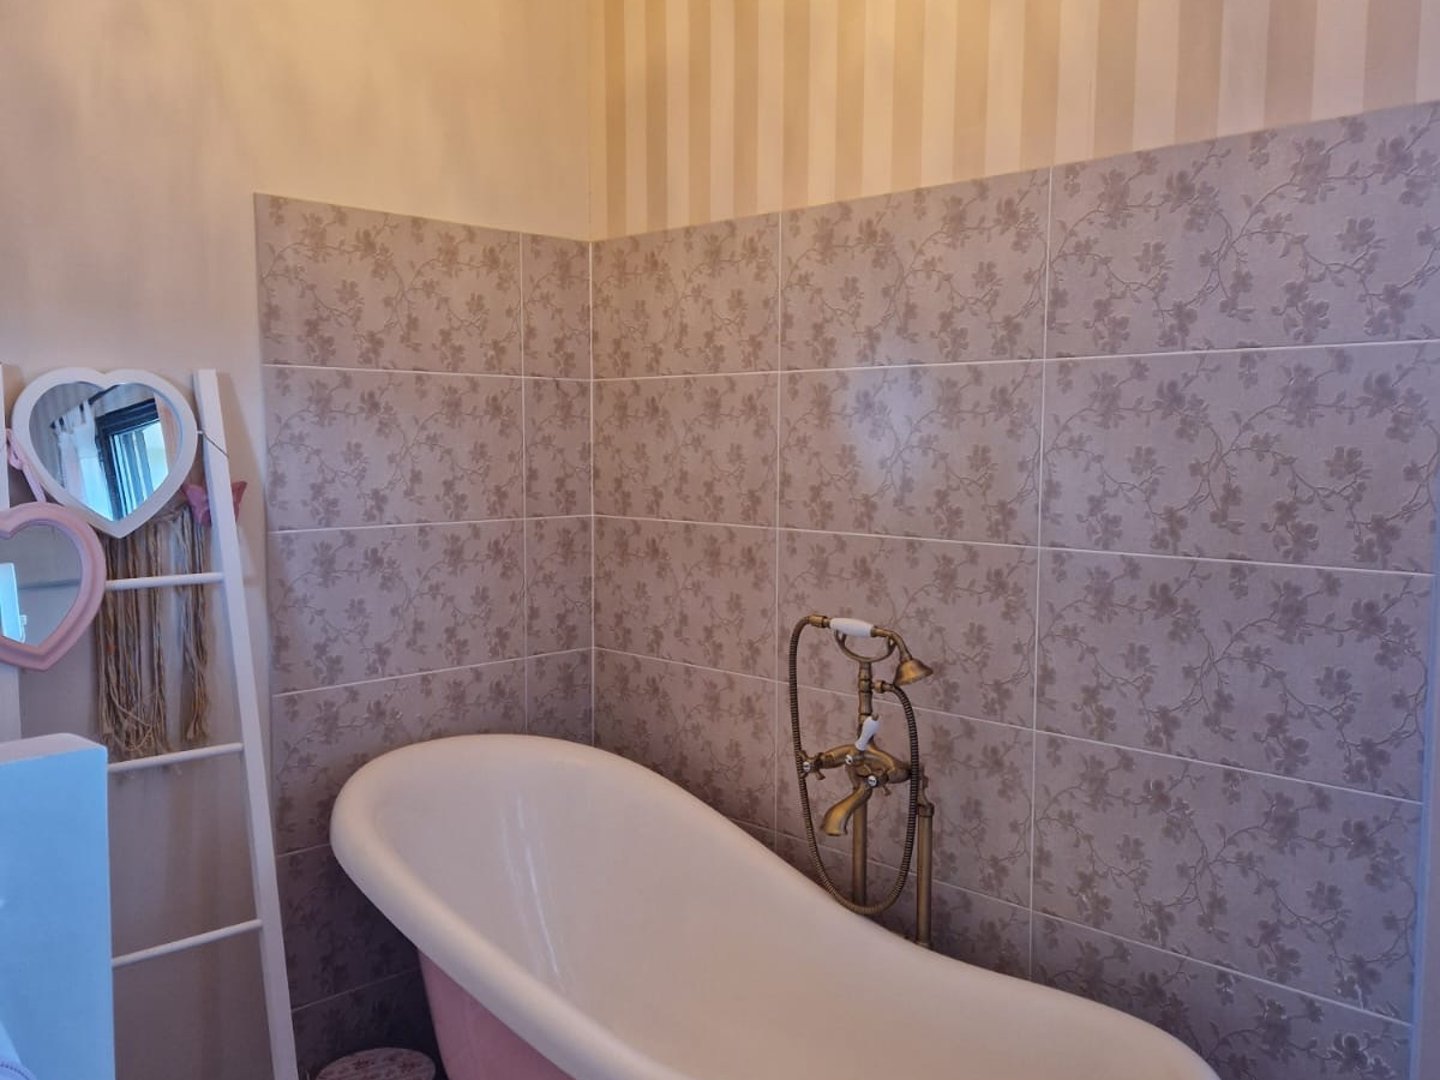 48 - La Roque sur Pernes: Villa: Bathroom - Salle de bain - Chambre 2